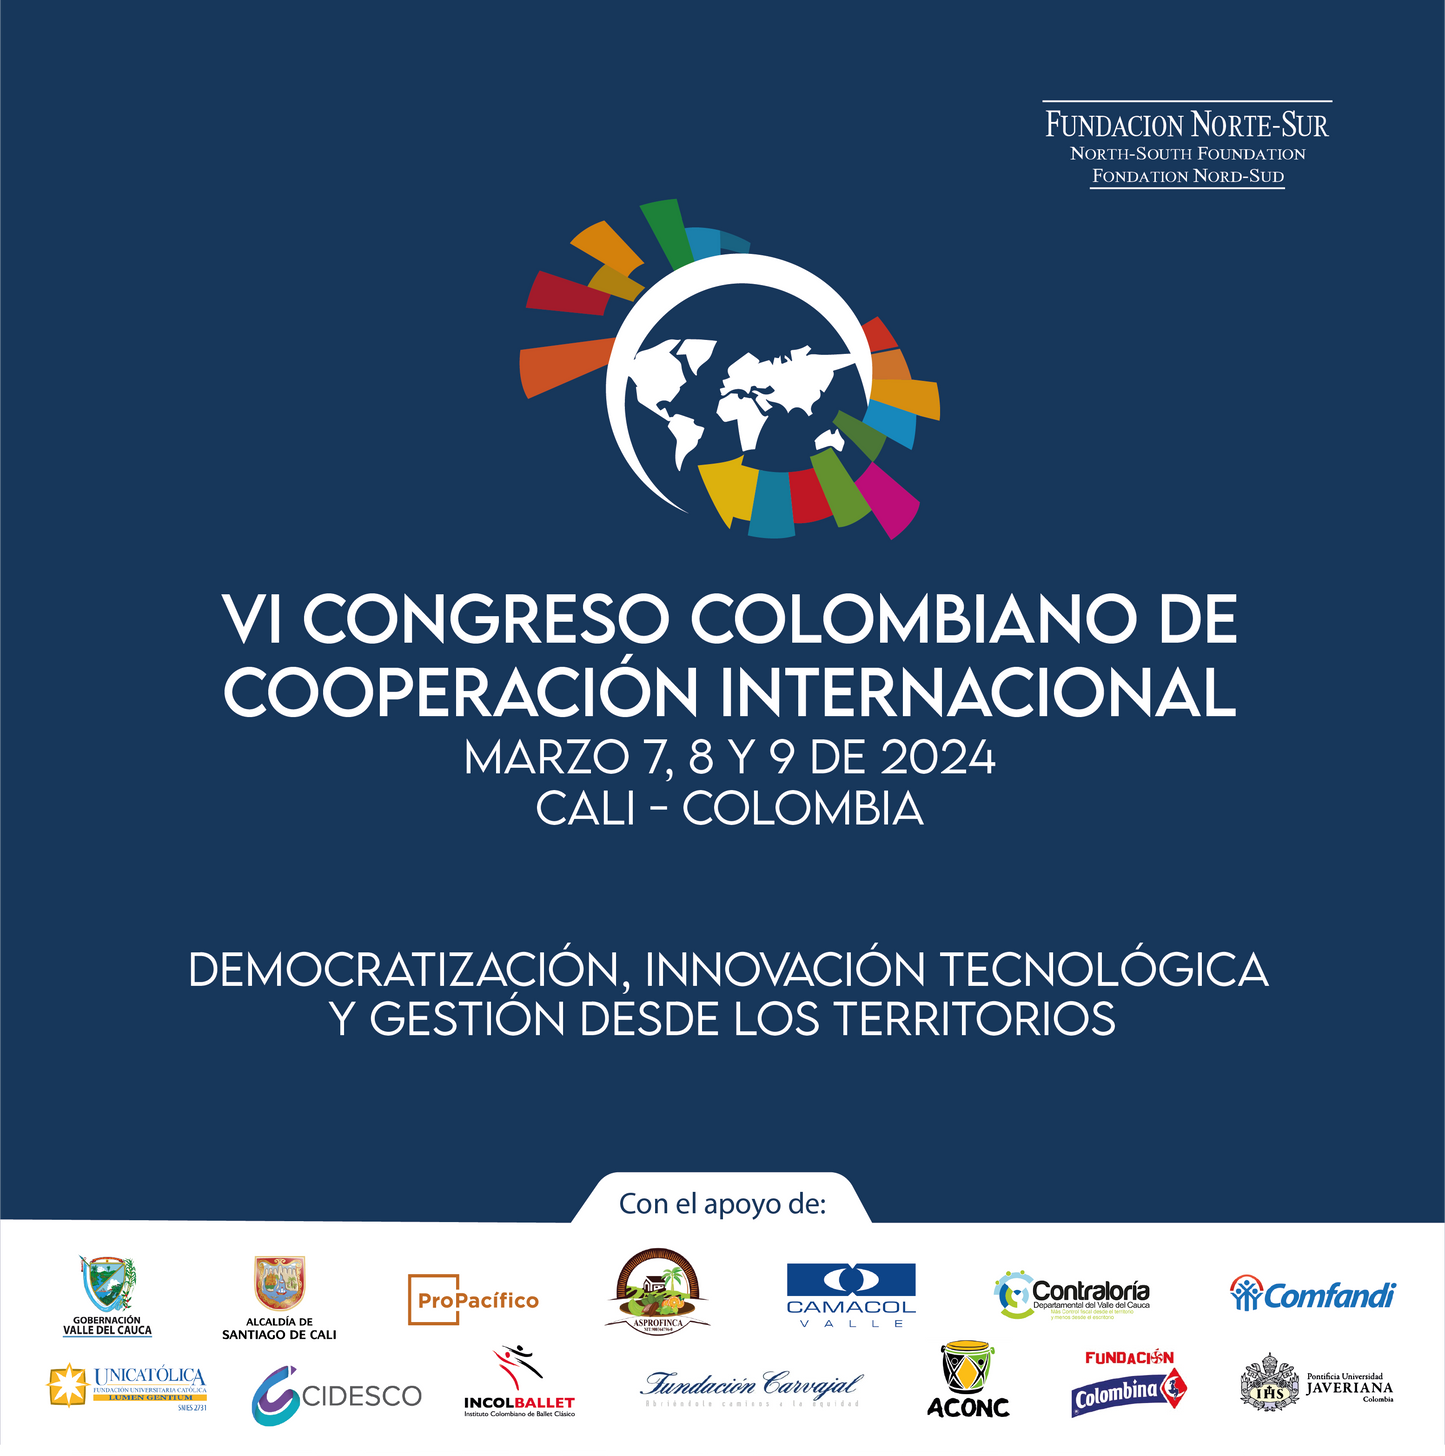 VI CONGRESO COLOMBIANO DE COOPERACION INTERNACIONAL